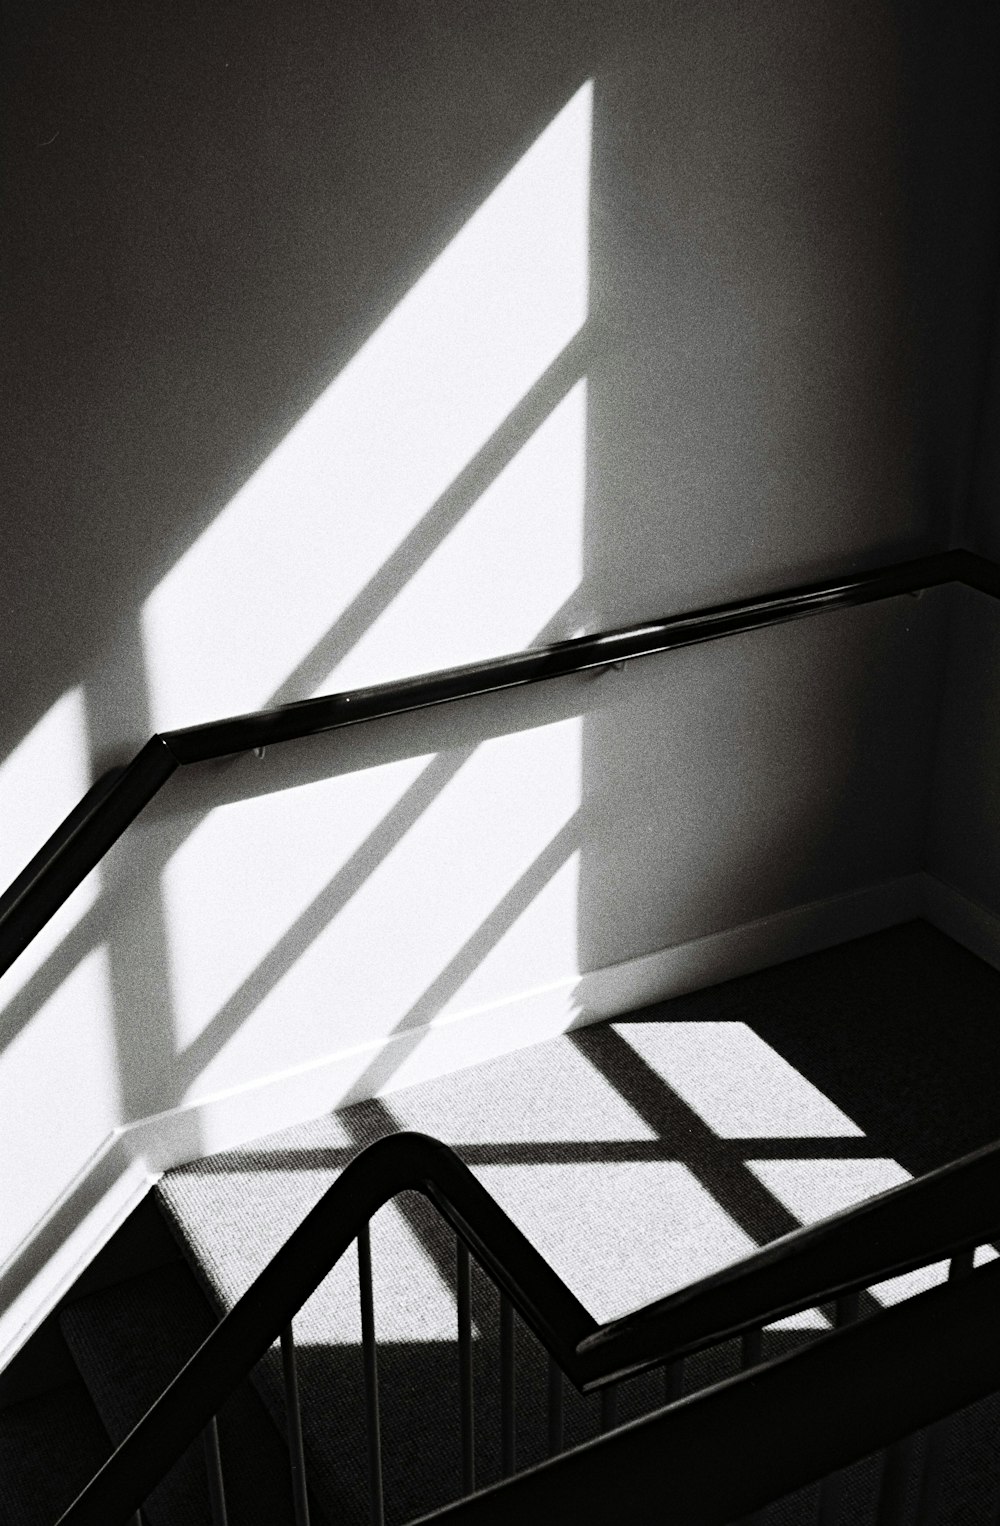 계단과 난간의 회색조 사진